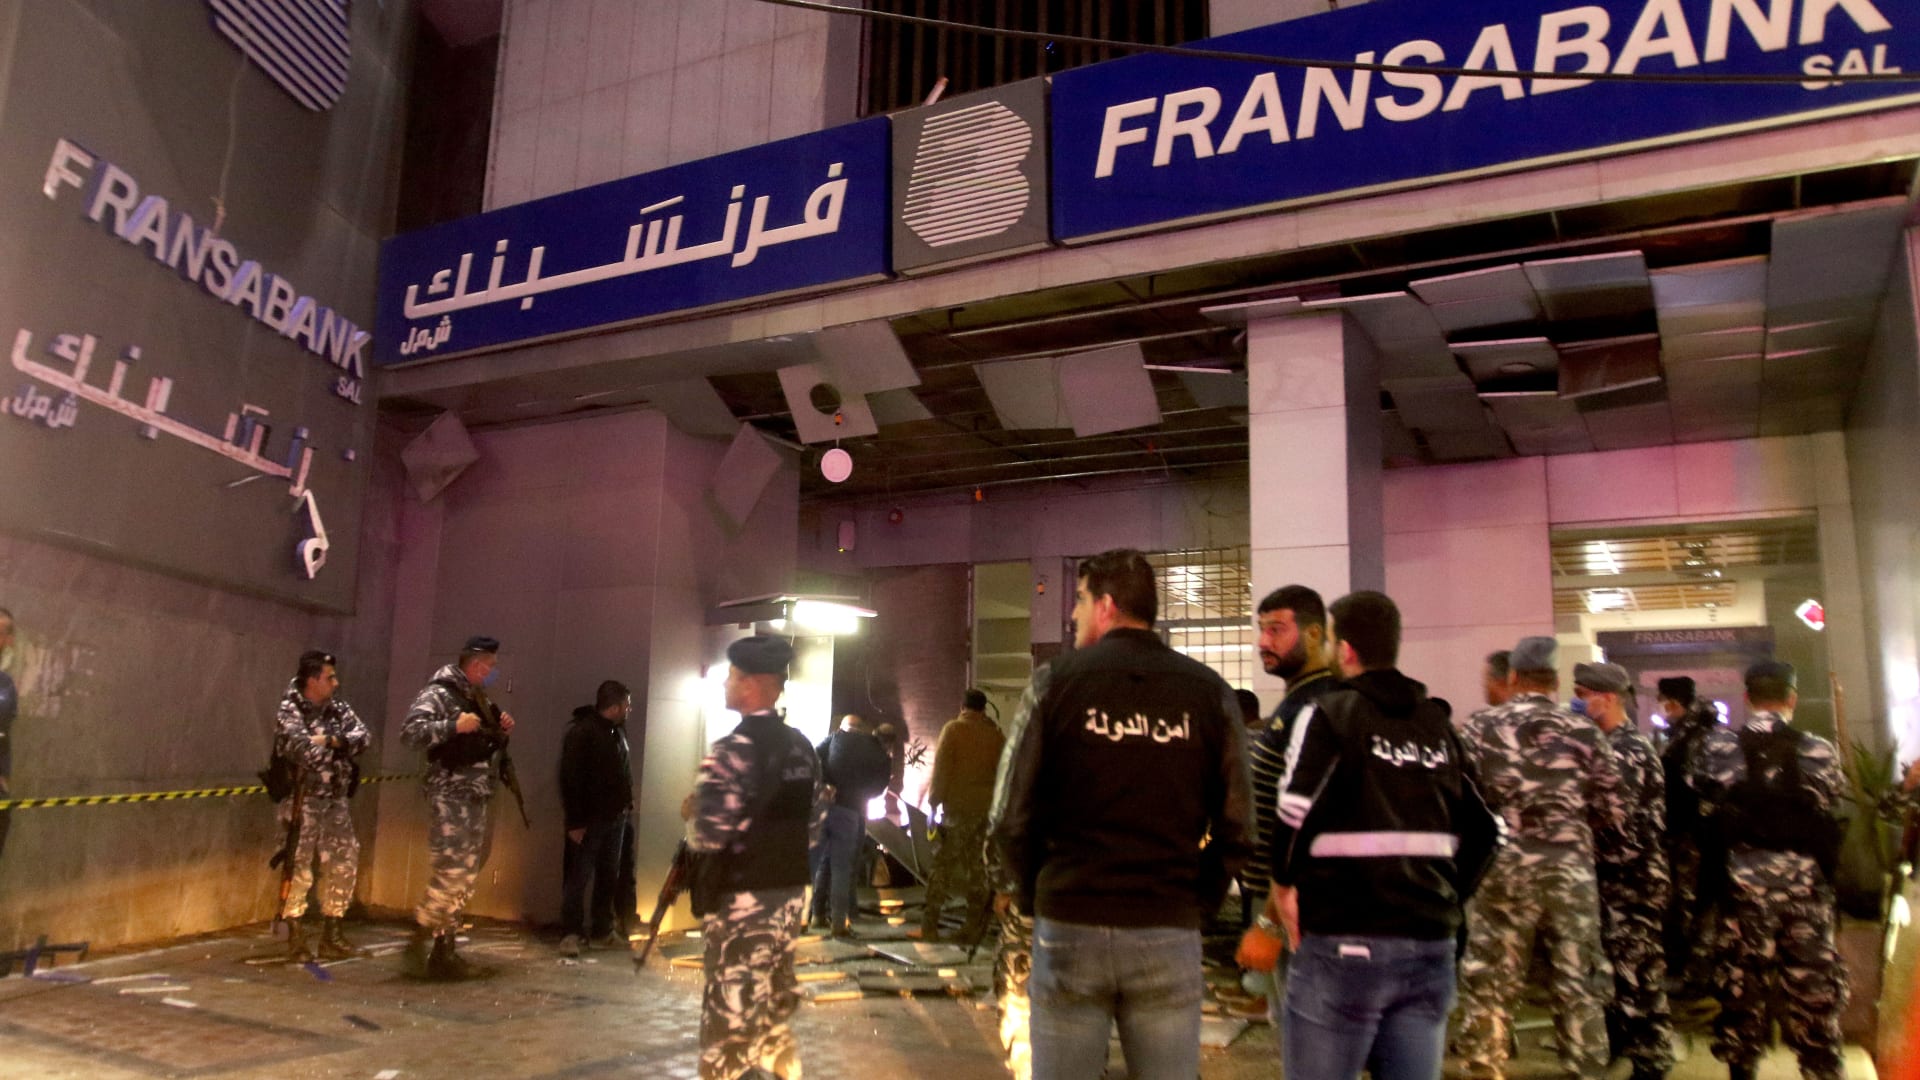 لبنان: انفجار قنبلة يستهدف بنكًا.. وكتابة "أنتم بخطر" على واجهات مصارف صيدا